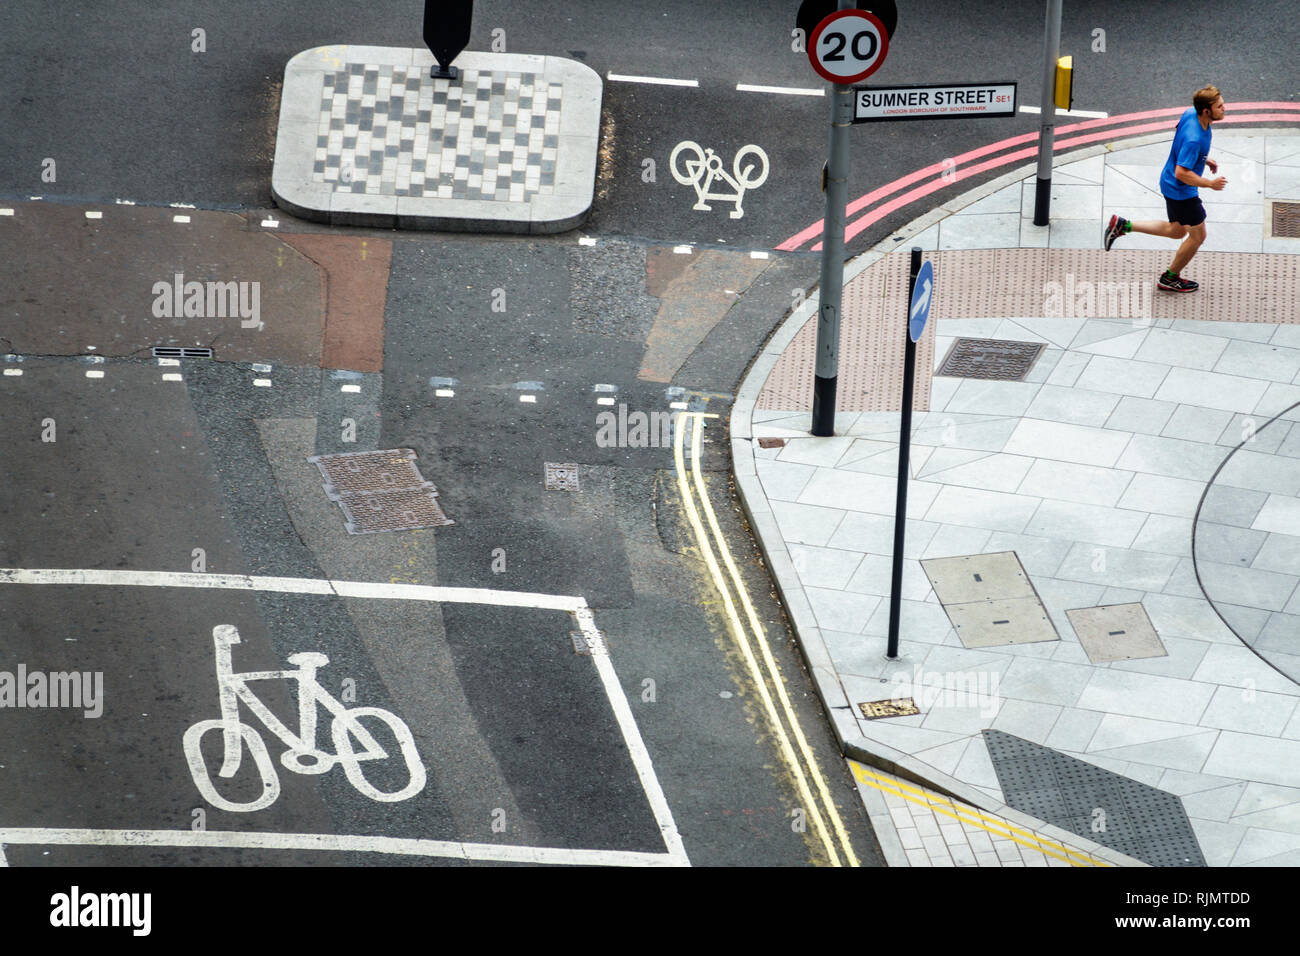 London England Vereinigtes Königreich Großbritannien Southwark Bankside Sumner Street Gemeinsame Fahrradspur Bürgersteig lackiert Schild Straße Markierung Kreuzung Stockfoto